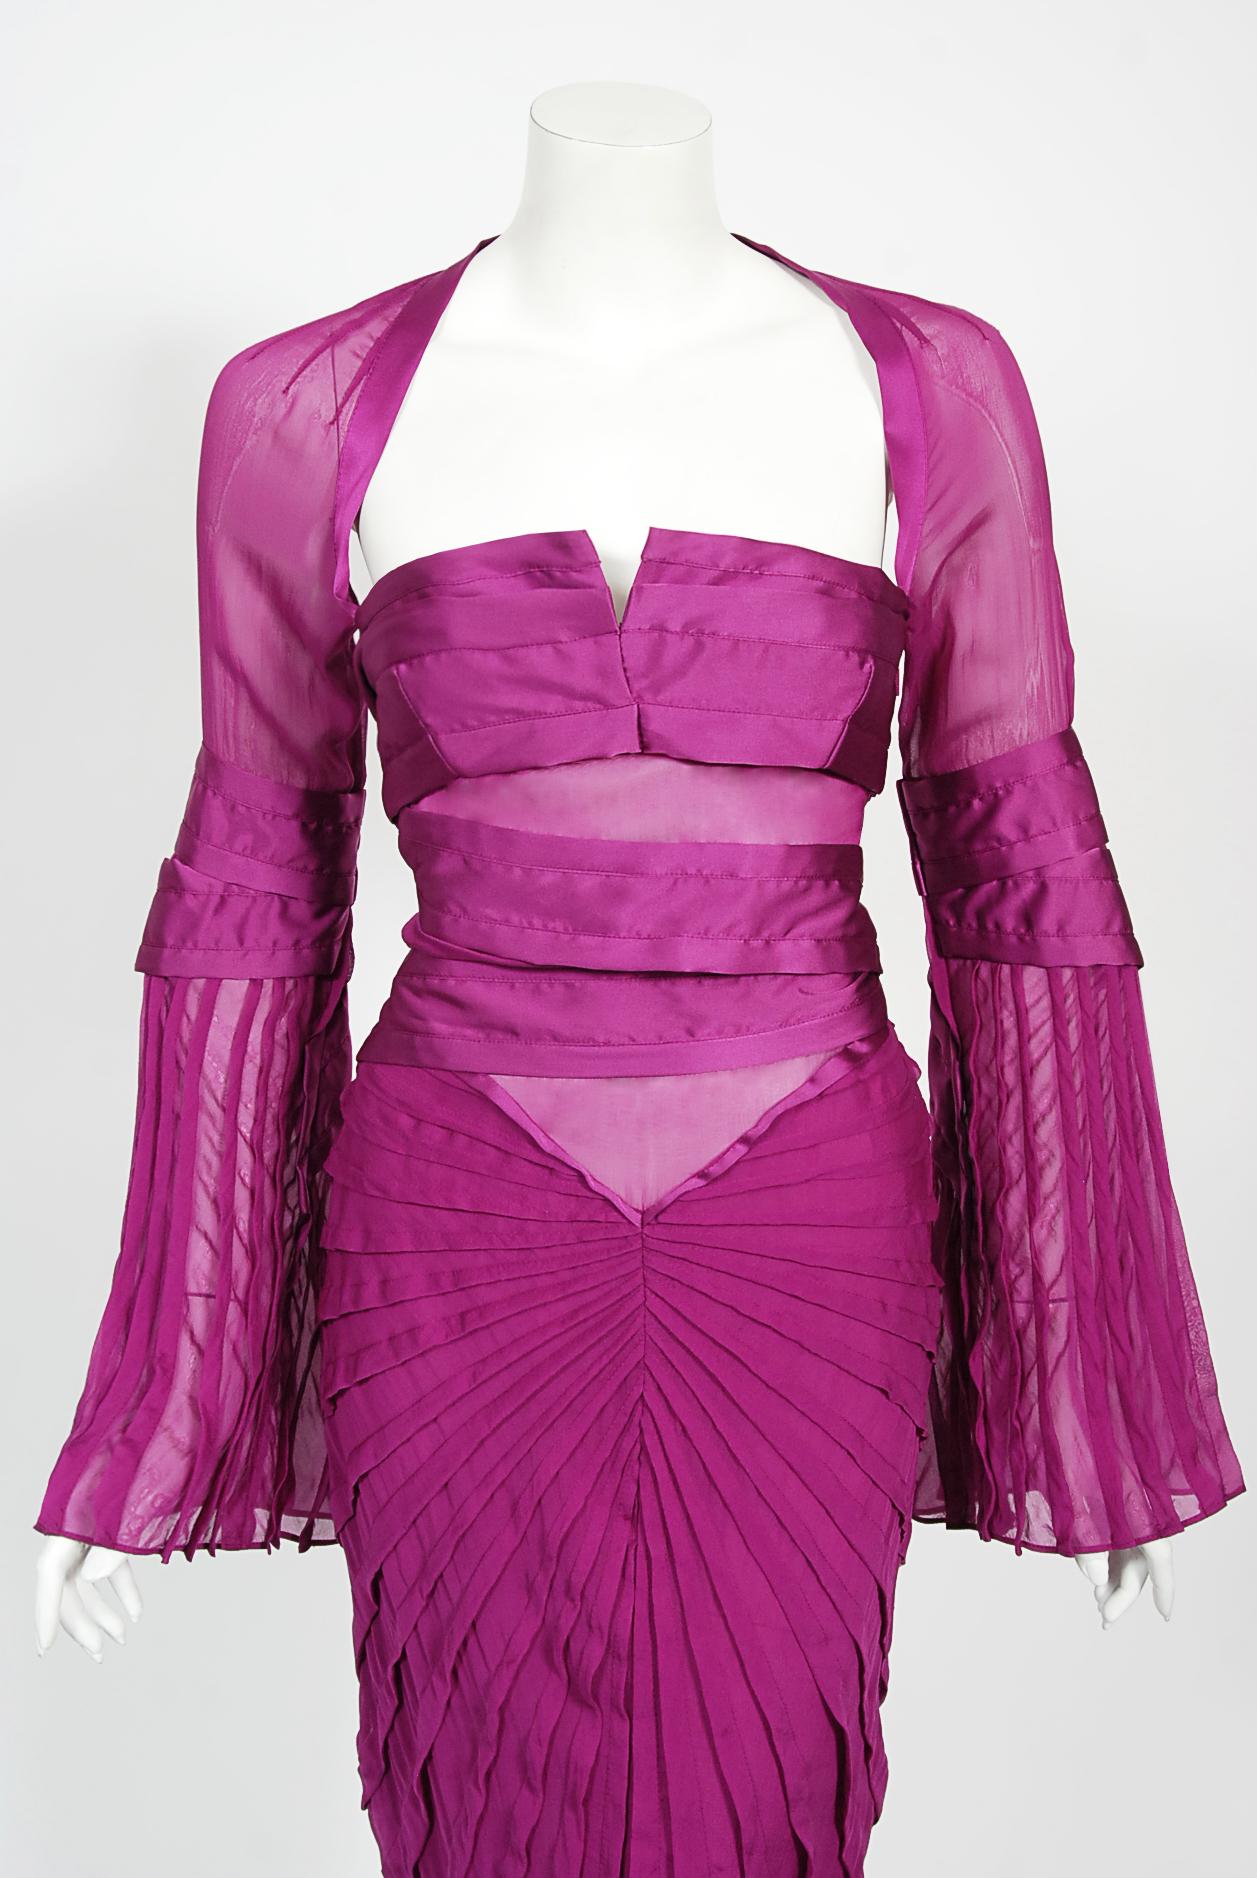 Absolut umwerfend und sofort wiedererkennbar: Gucci by Tom Ford dokumentiert den Laufsteg-Look #27 von Liya Kebede für Herbst/Winter 2004. Dieser ikonische lila Hingucker ist eines der begehrtesten Kleider aus seiner letzten Kollektion mit Gucci.